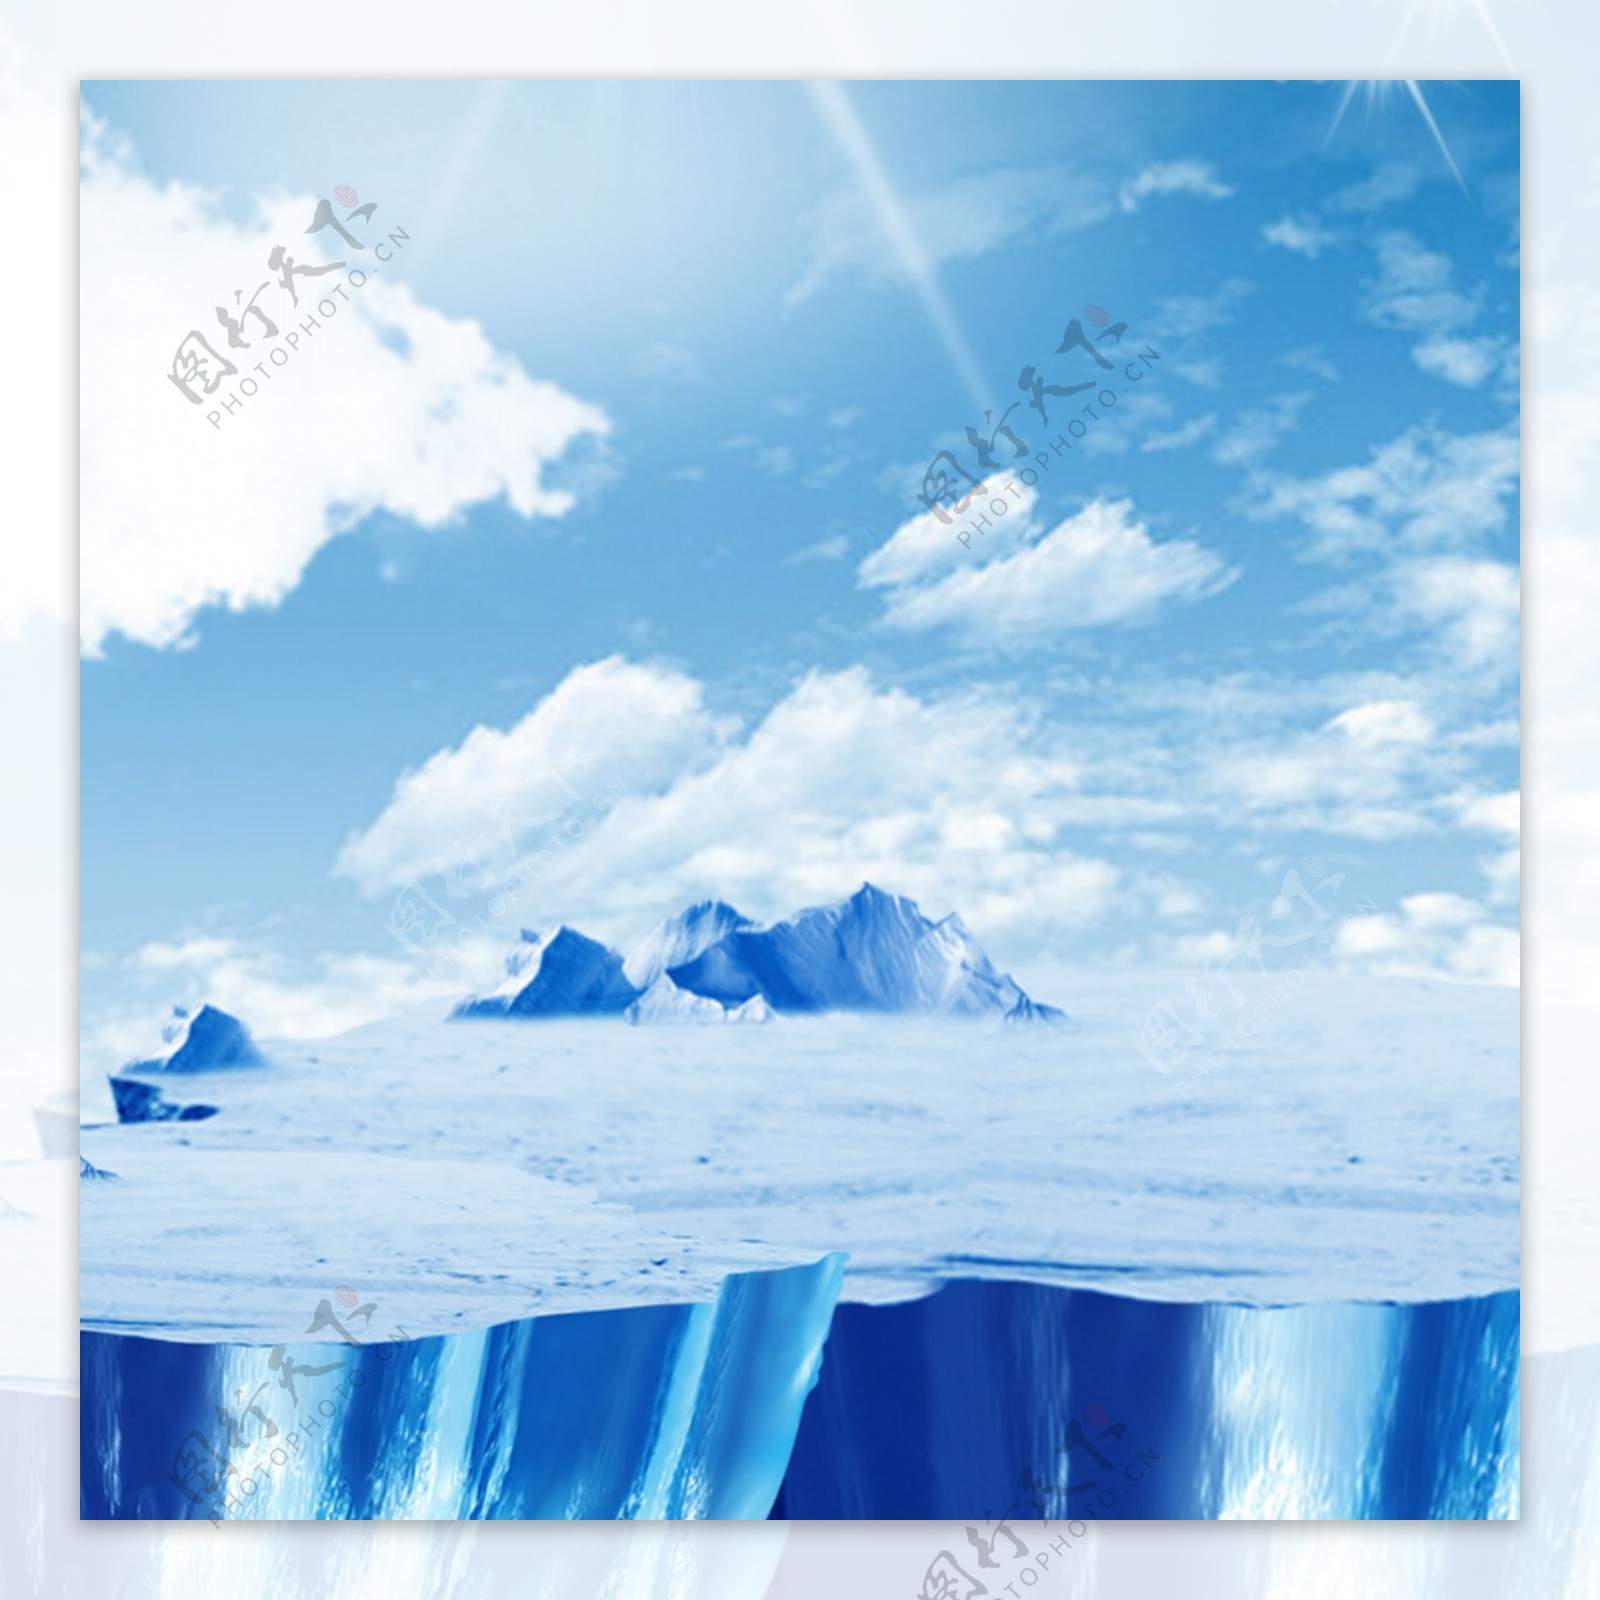 极地冰块冰箱空调主图背景素材